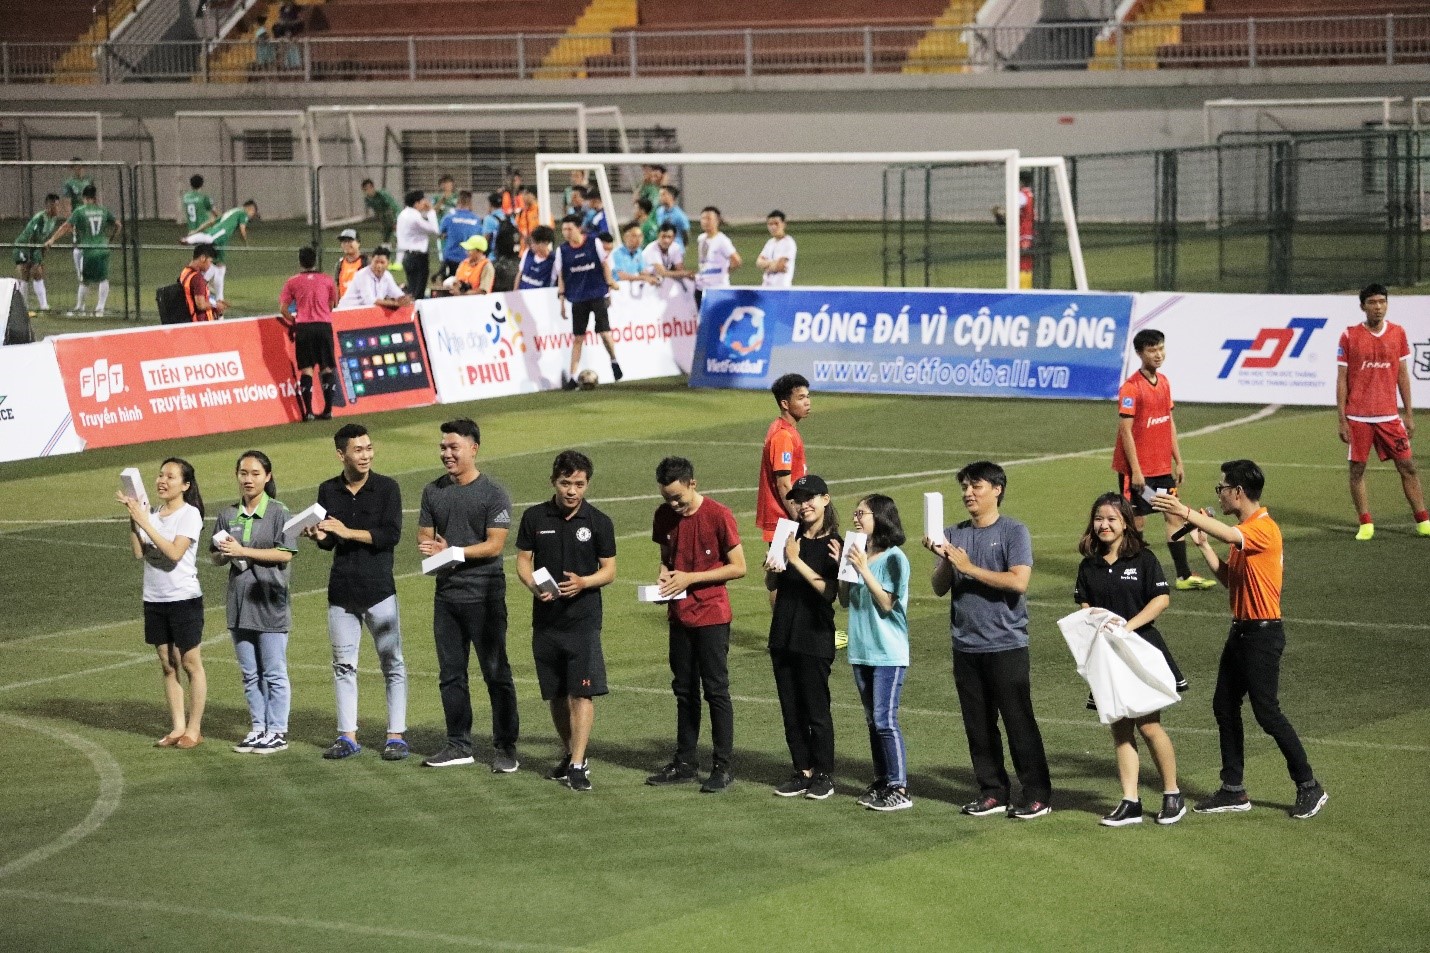 Đội bóng của Minh Vương nhận thất bại trong trận khai mạc giải “phủi” có ứng dụng công nghệ truyền hình tương tác.